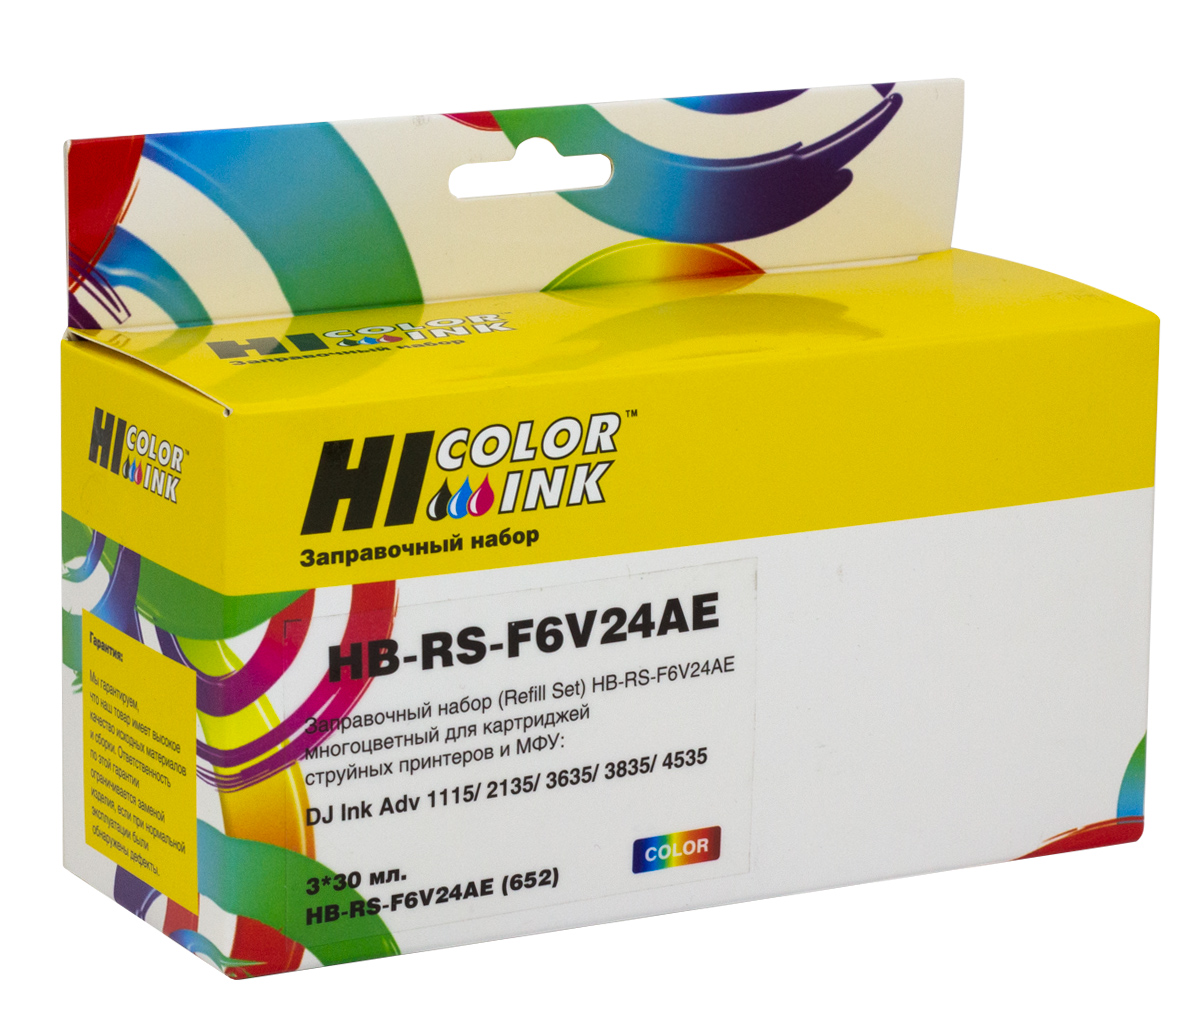 Заправочный набор Hi-Black F6V24AE для HP DJ Ink Adv1115/2135/3635/3835/4535, Сolor, 90ml